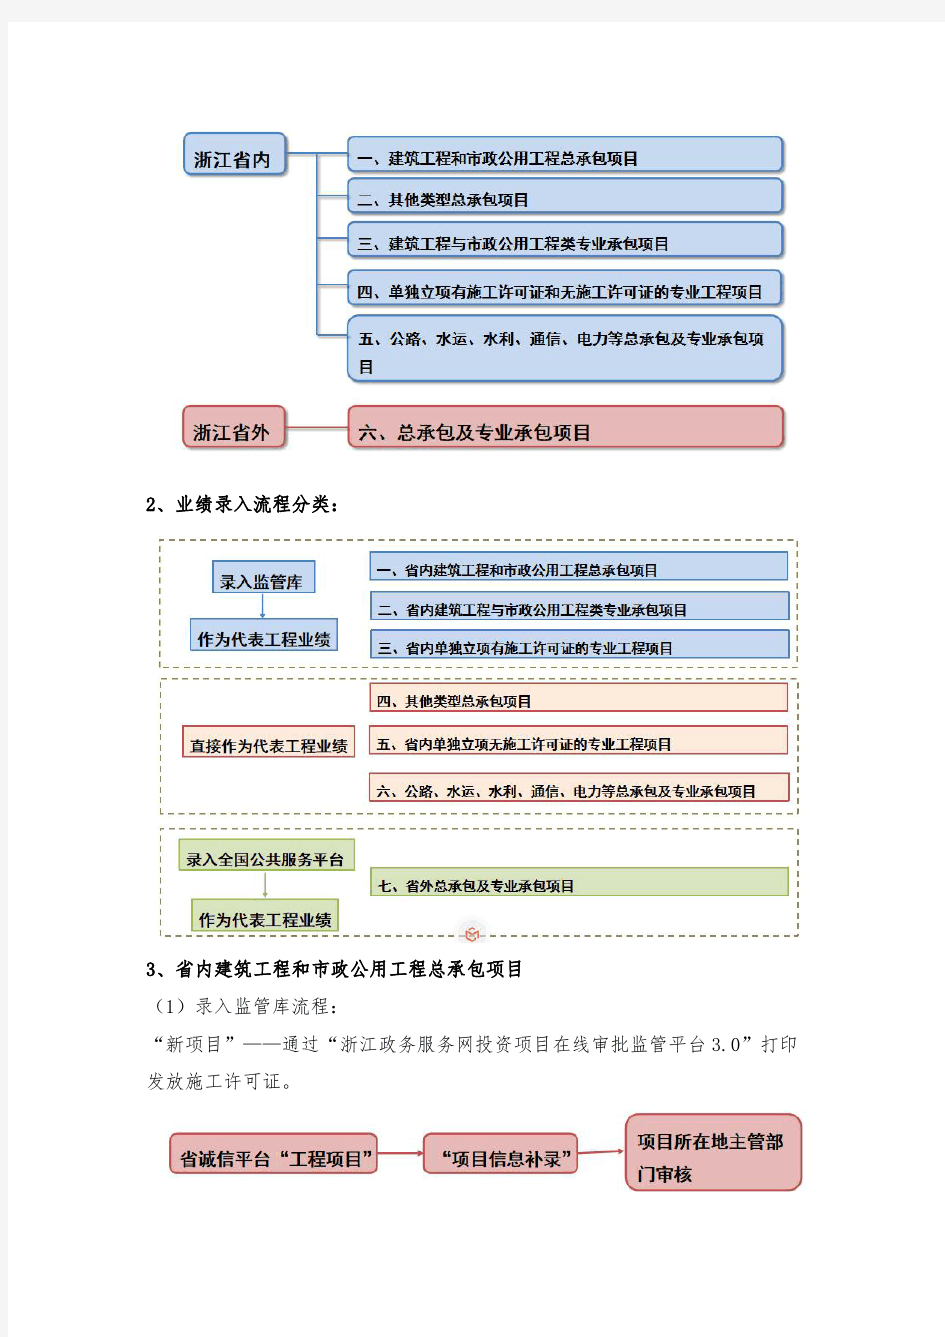 浙江省建筑市场监管与诚信信息系统升级改造操作说明-V1.0